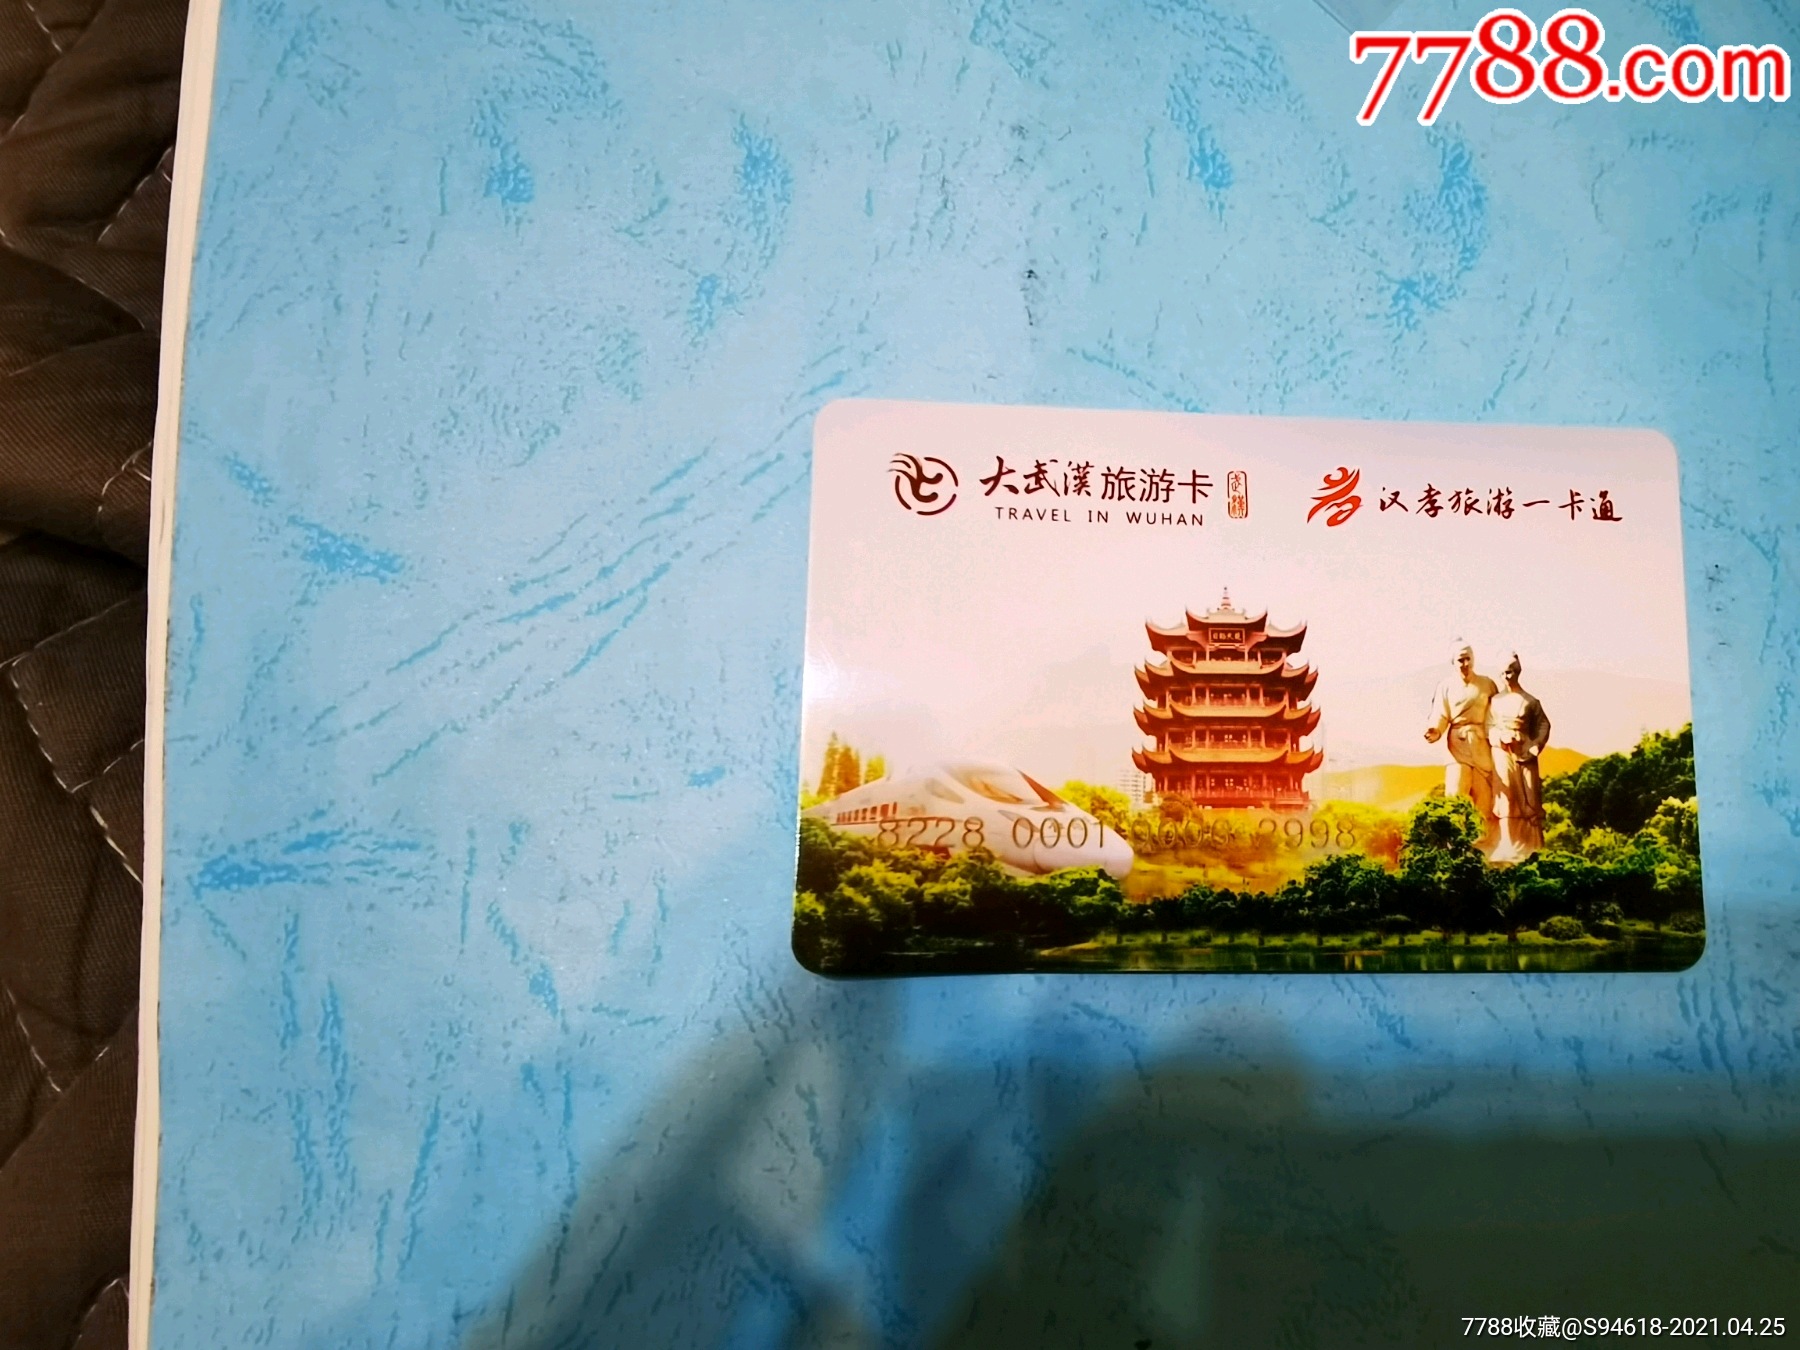 大武汉旅游卡包括景区图片